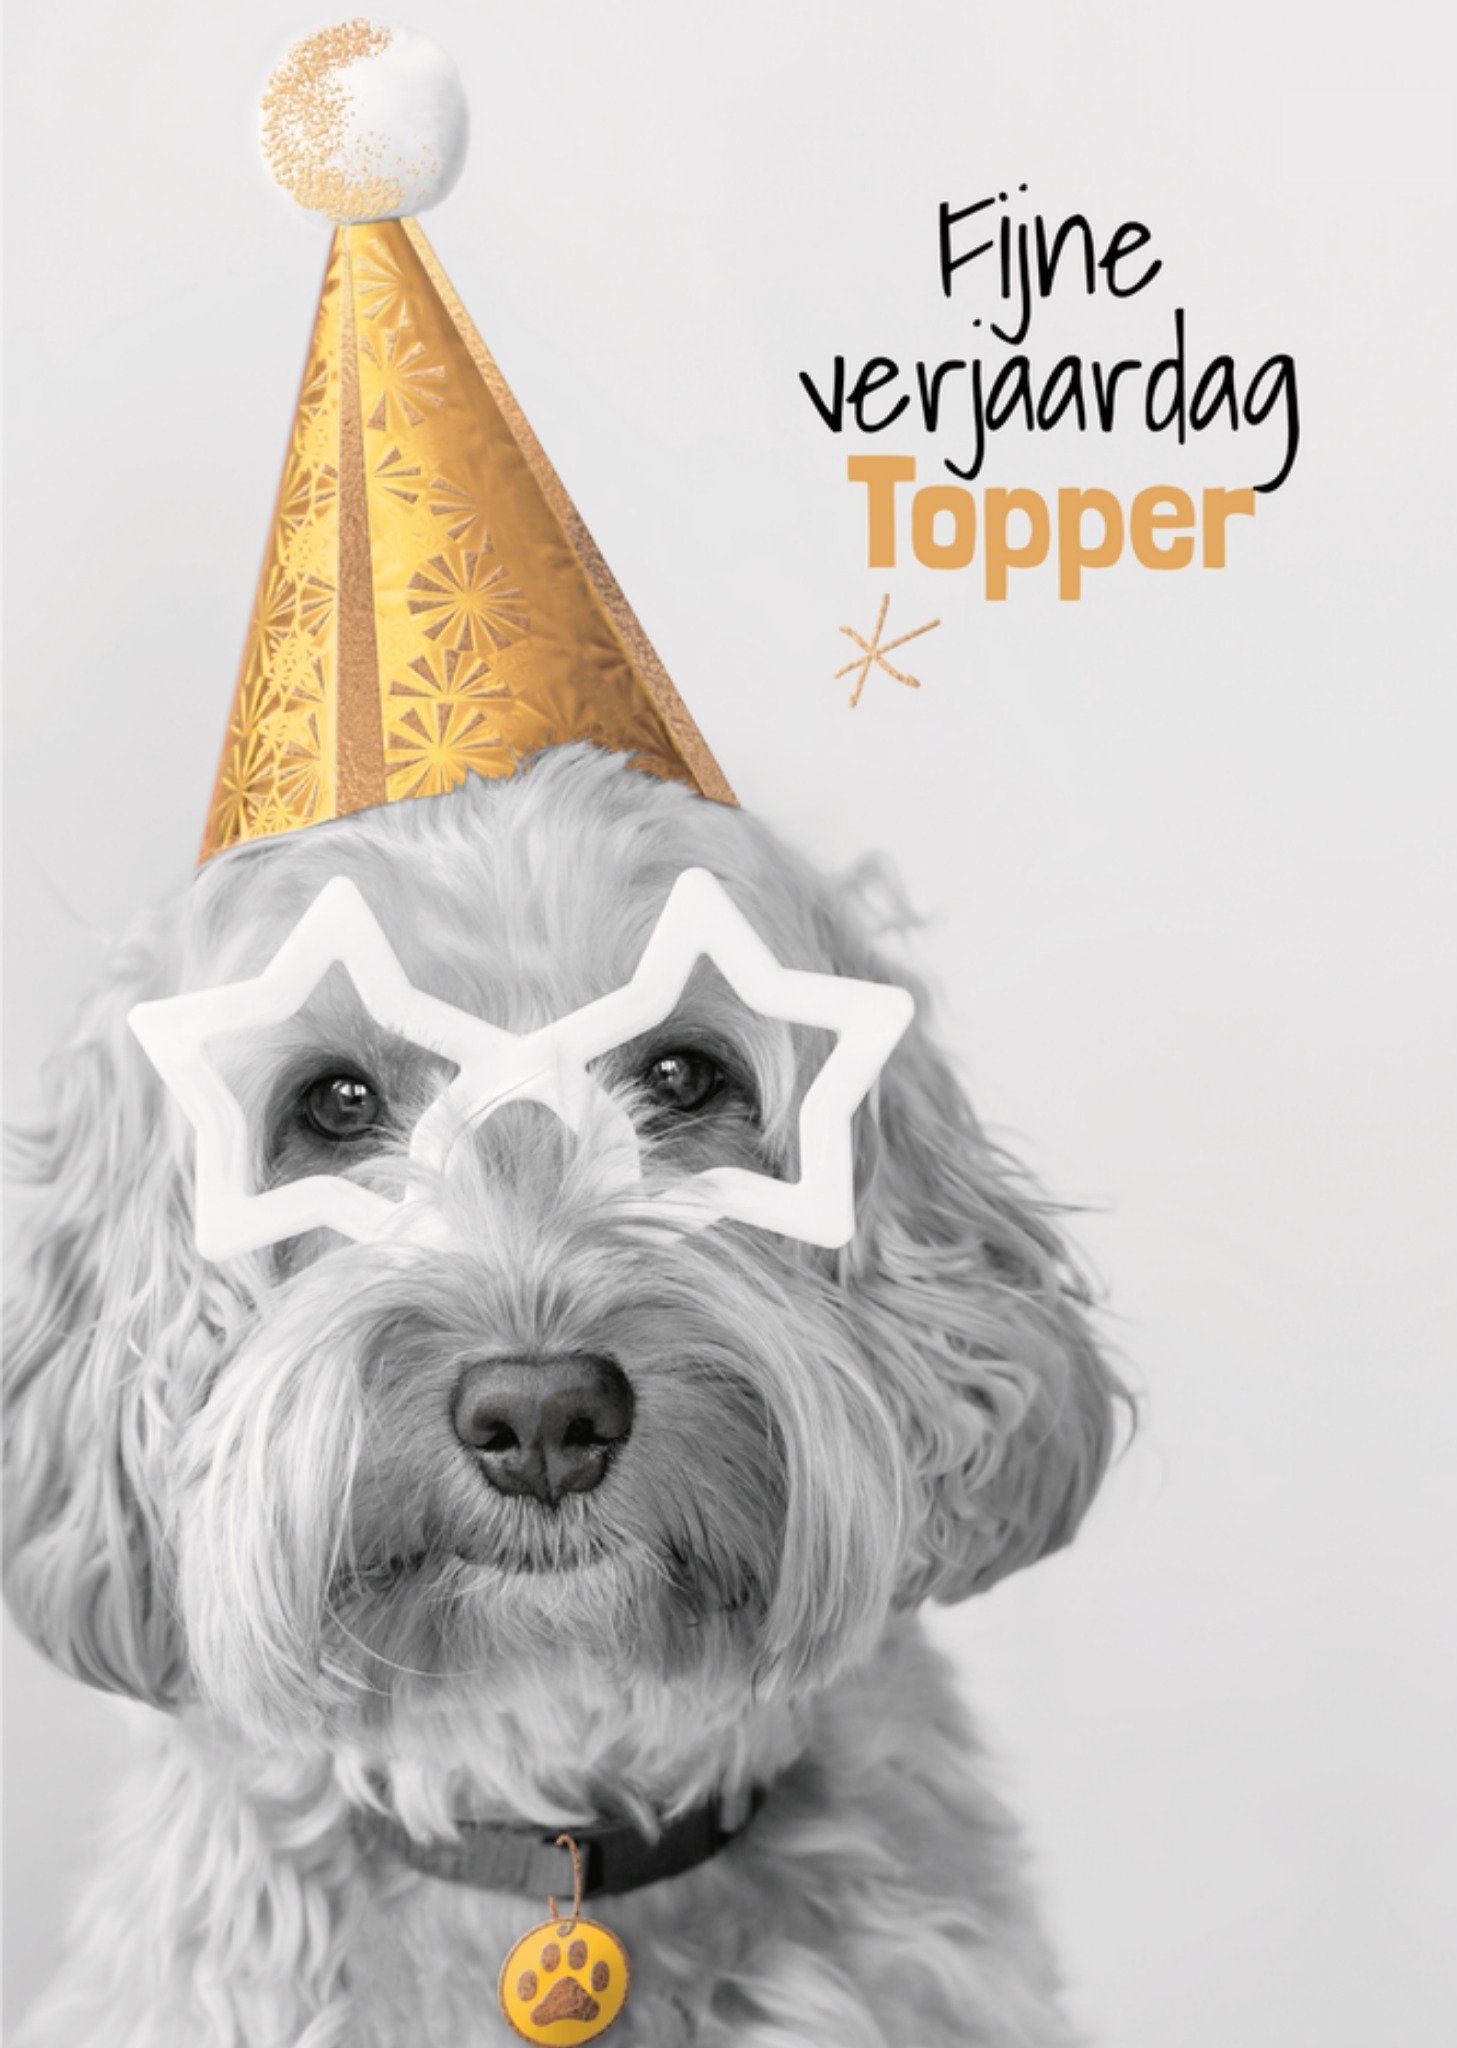 TMS - Verjaardagskaart - Topper - Hond